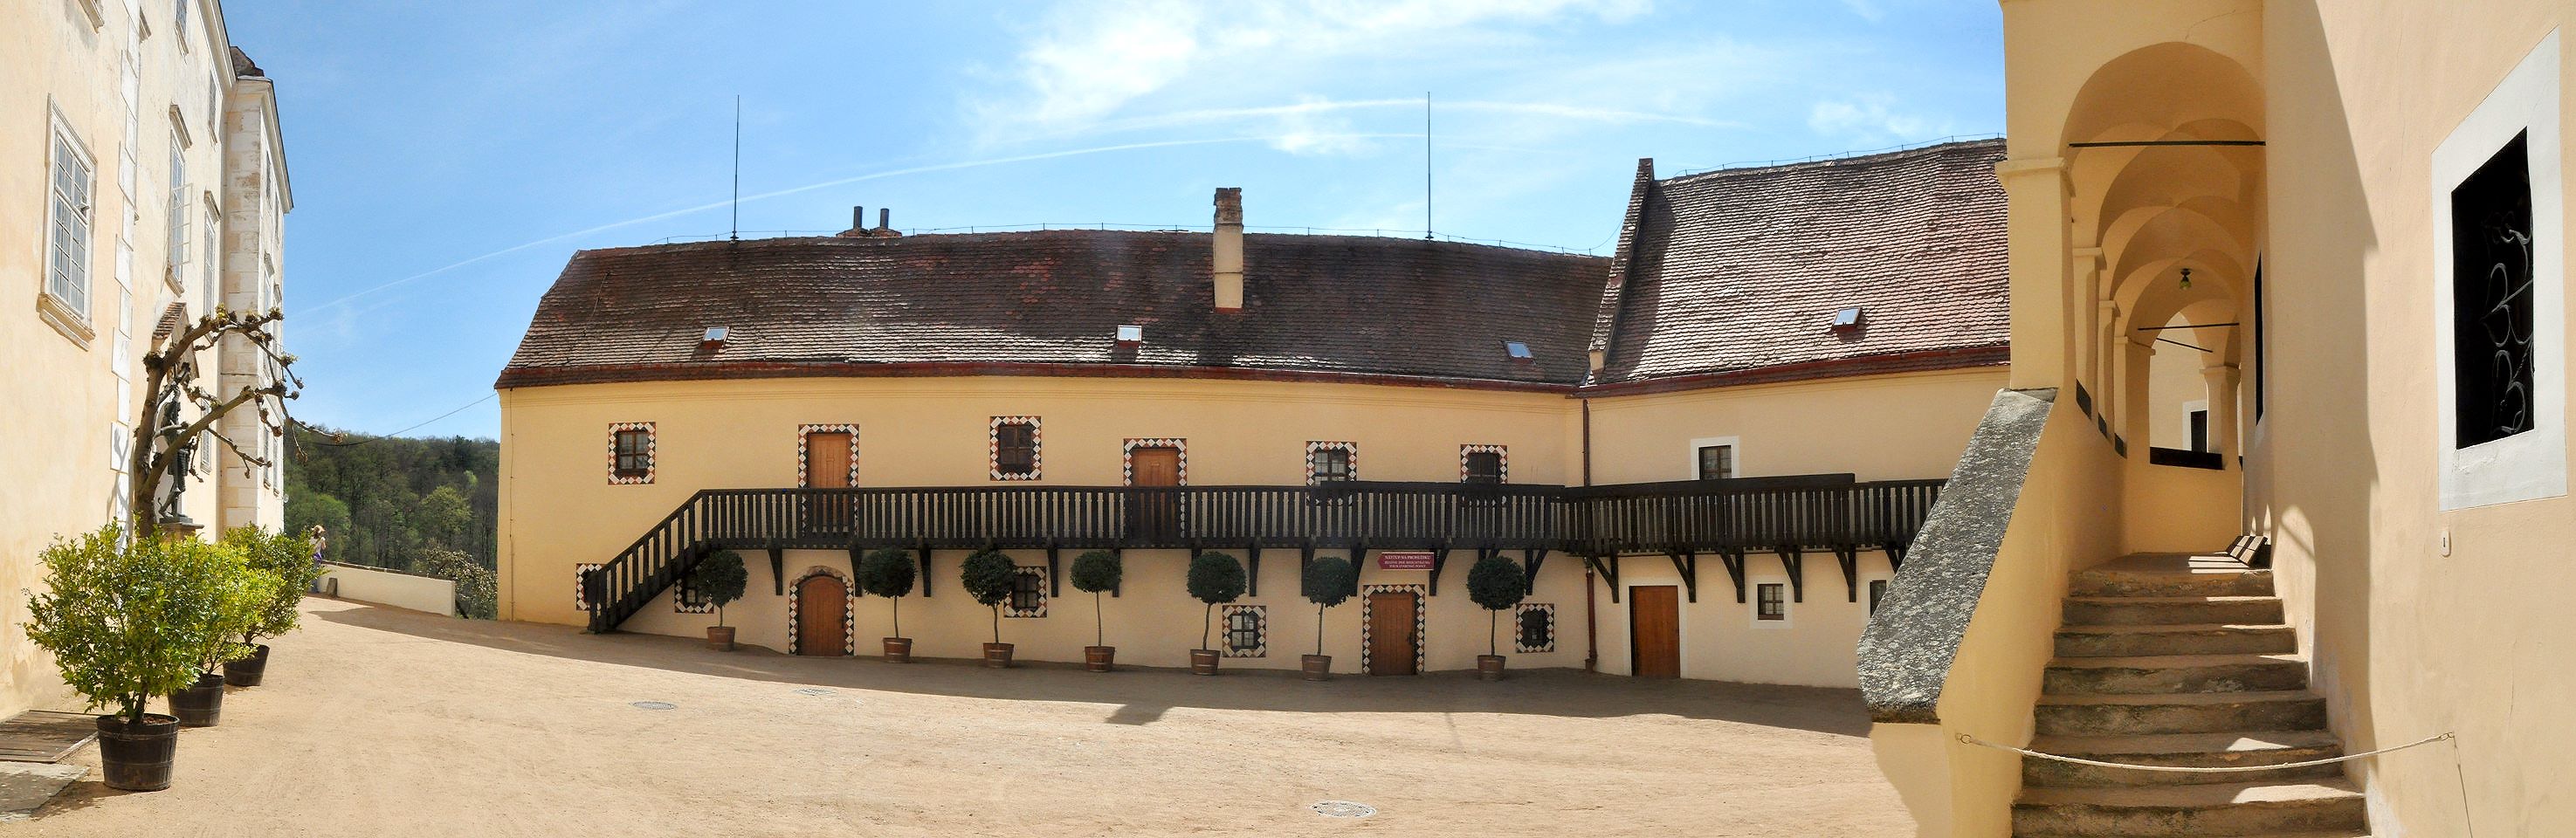 Der erste Hof von Schloss Frain, der mittelalterliche Burghof